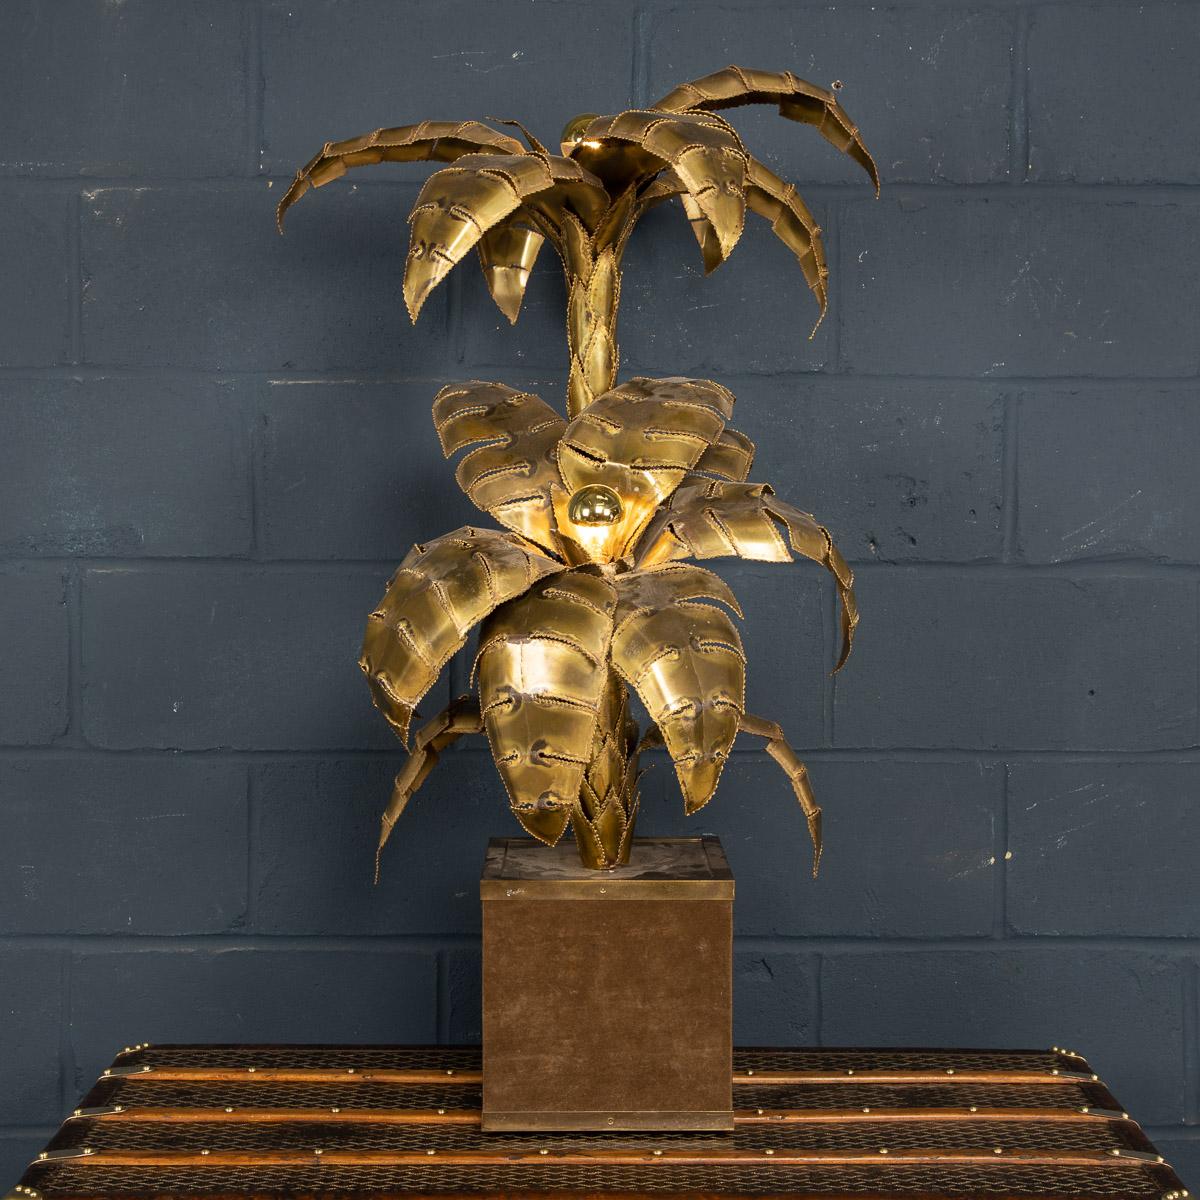 Une belle lampe de table ou lampadaire en forme de palmier de Maison Jansen, des années 1970, avec deux points lumineux. La lampe a été construite à la main à l'aide de feuilles de laiton se chevauchant les unes les autres pour imiter les feuilles